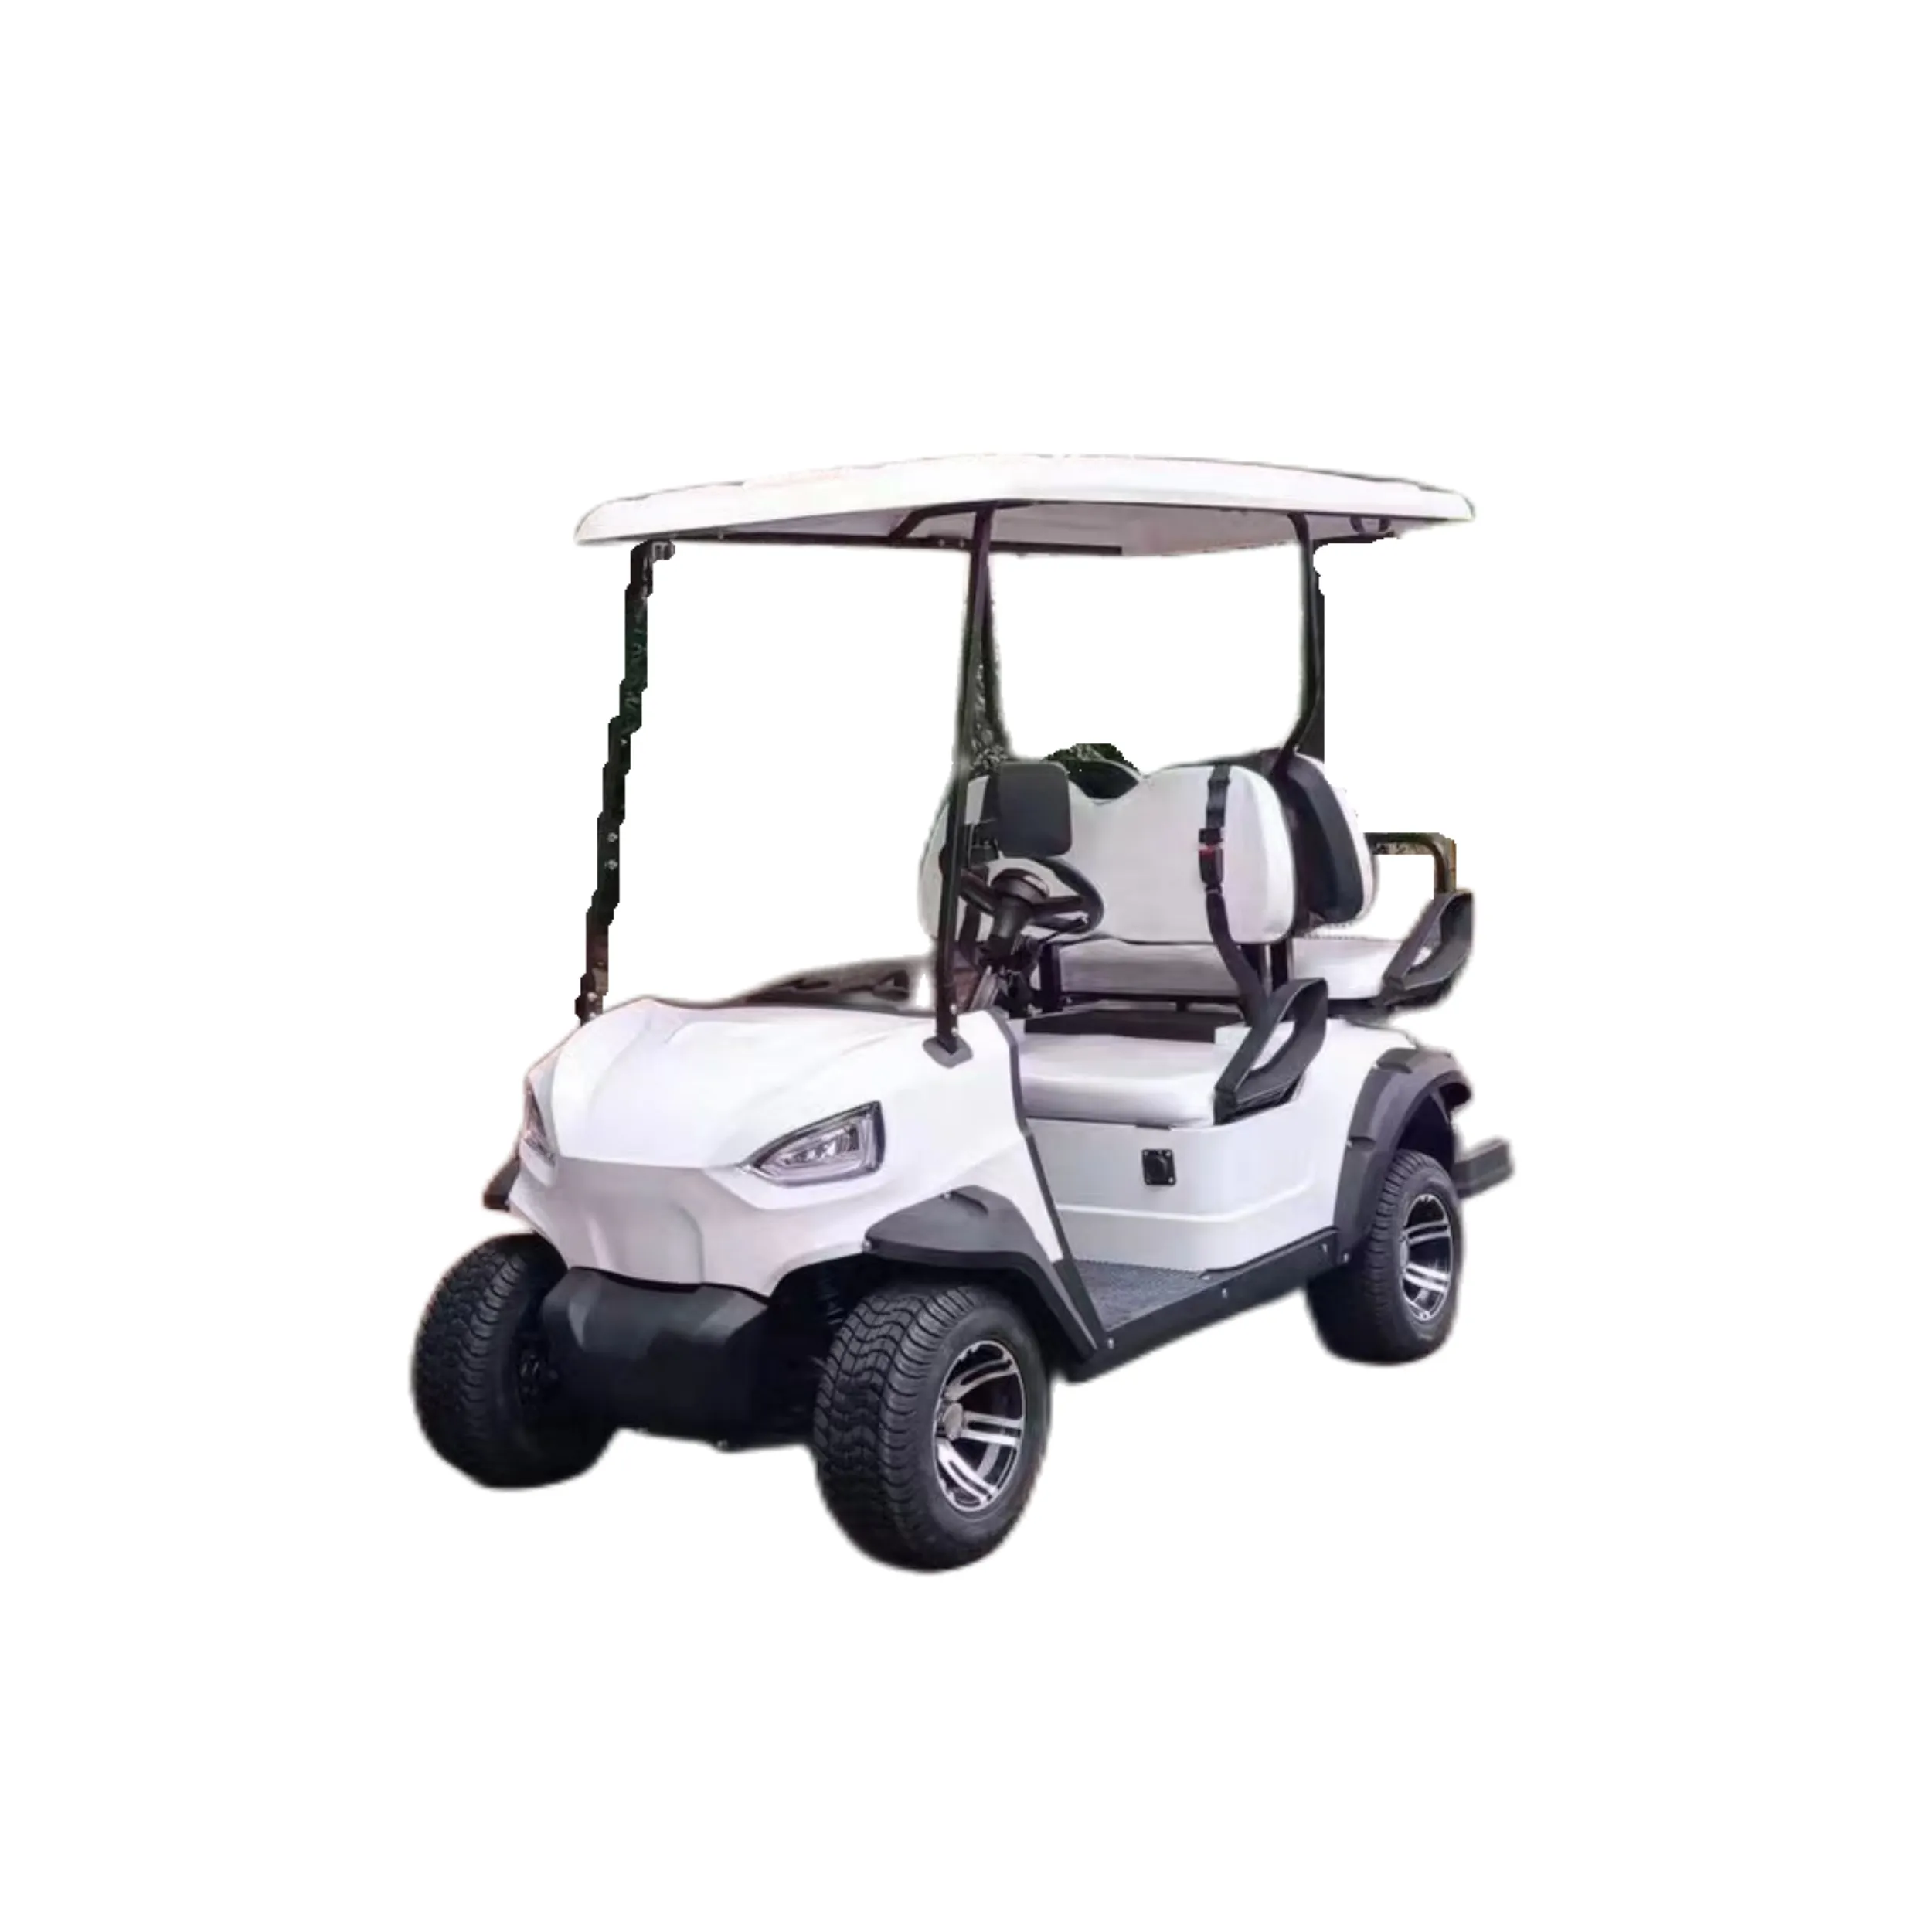 Precios bajos Asientos personalizados Comprar carrito de golf eléctrico 4 asientos en China Carrito de golf eléctrico